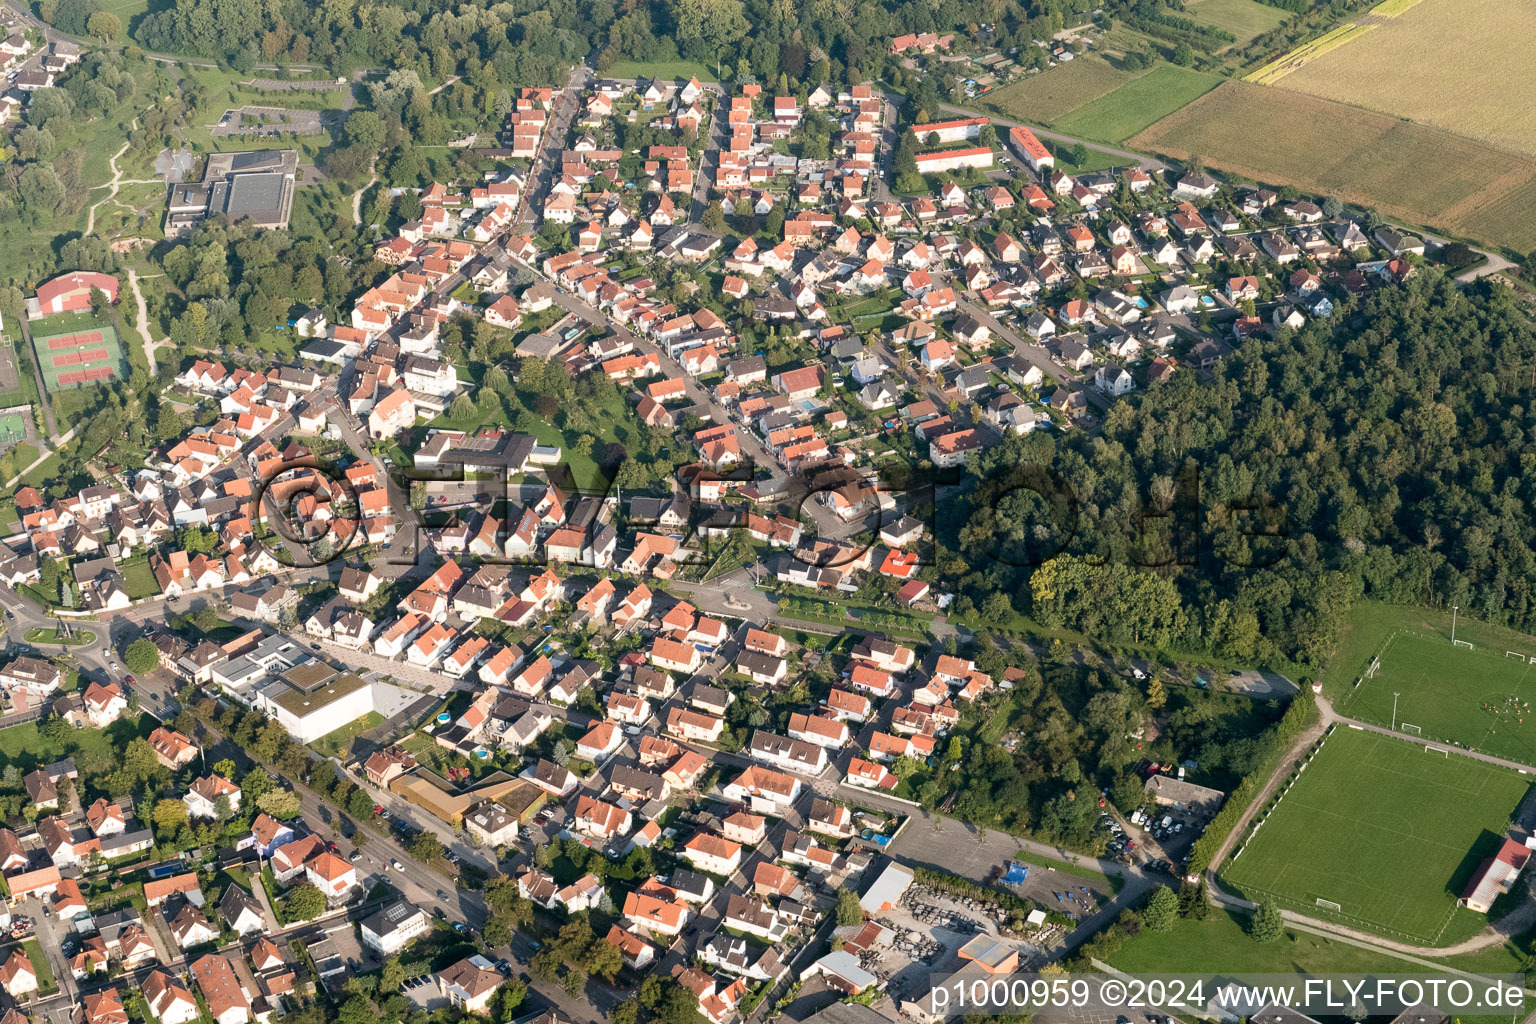 Luftbild von Ortsansicht der Straßen und Häuser der Wohngebiete in Drusenheim in Grand Est im Bundesland Bas-Rhin, Frankreich